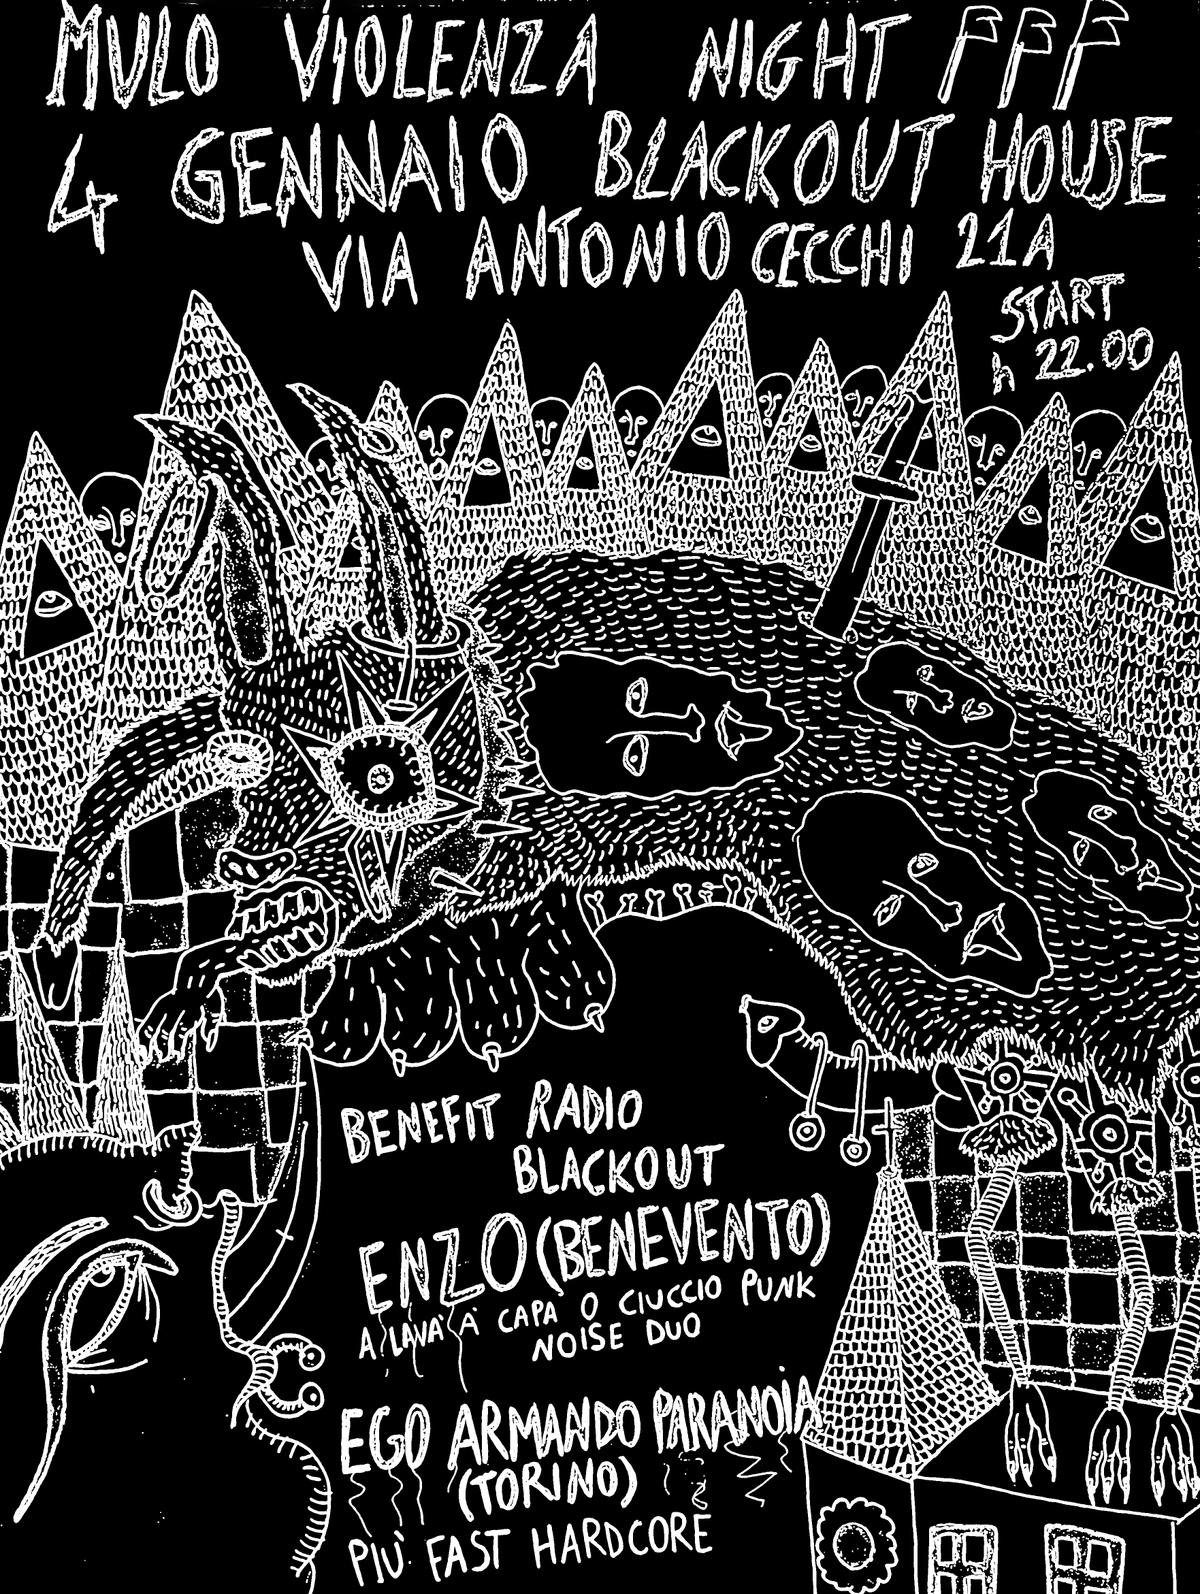 Mulo Viulenza Night - Enz0 + Ego Armando Paranoia | BENEFIT Radio Blackout